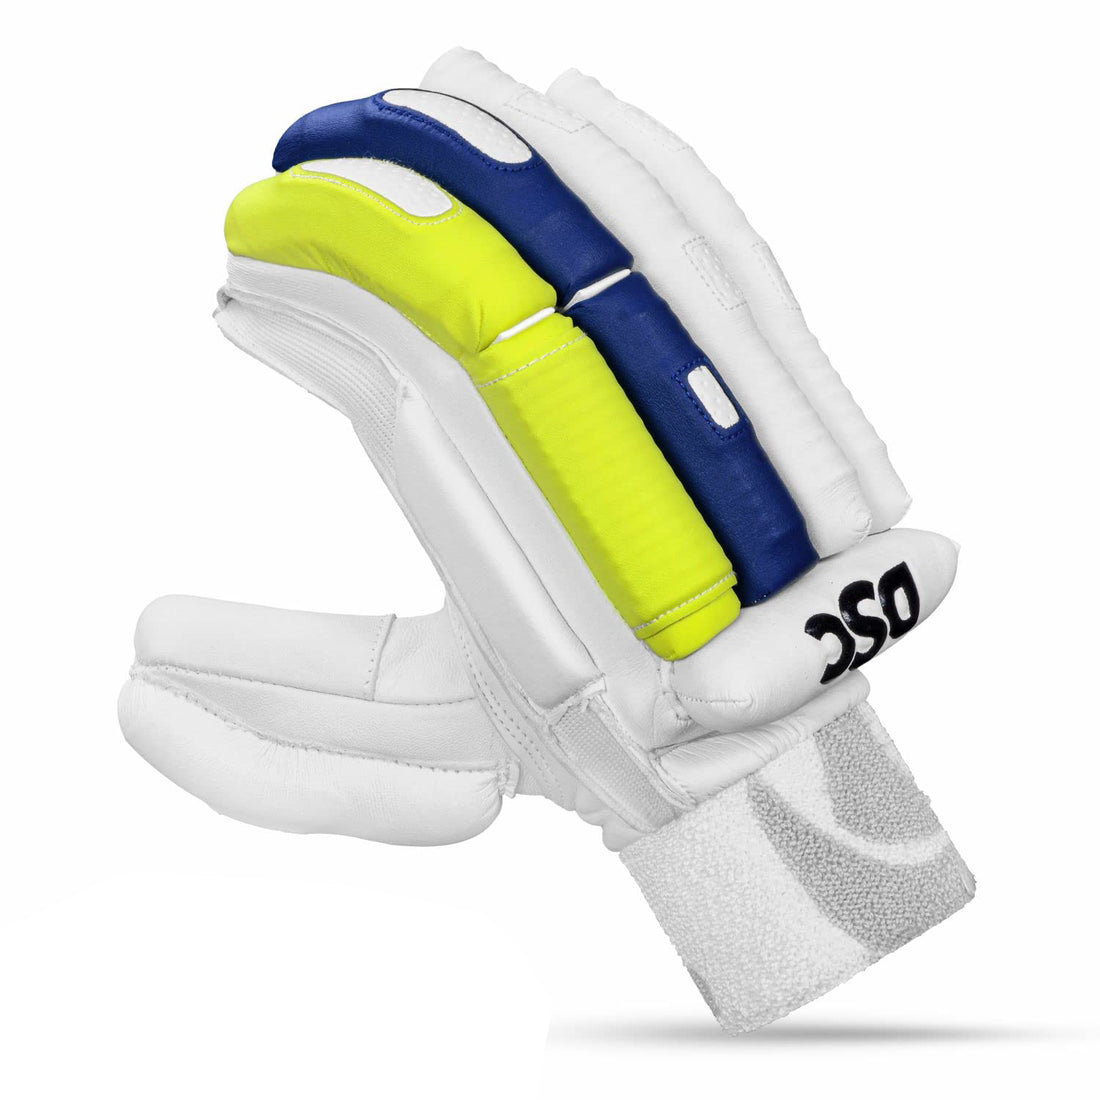 DSC Condor Surge 2.0 RH Batting Gloves - Best Price online Prokicksports.com